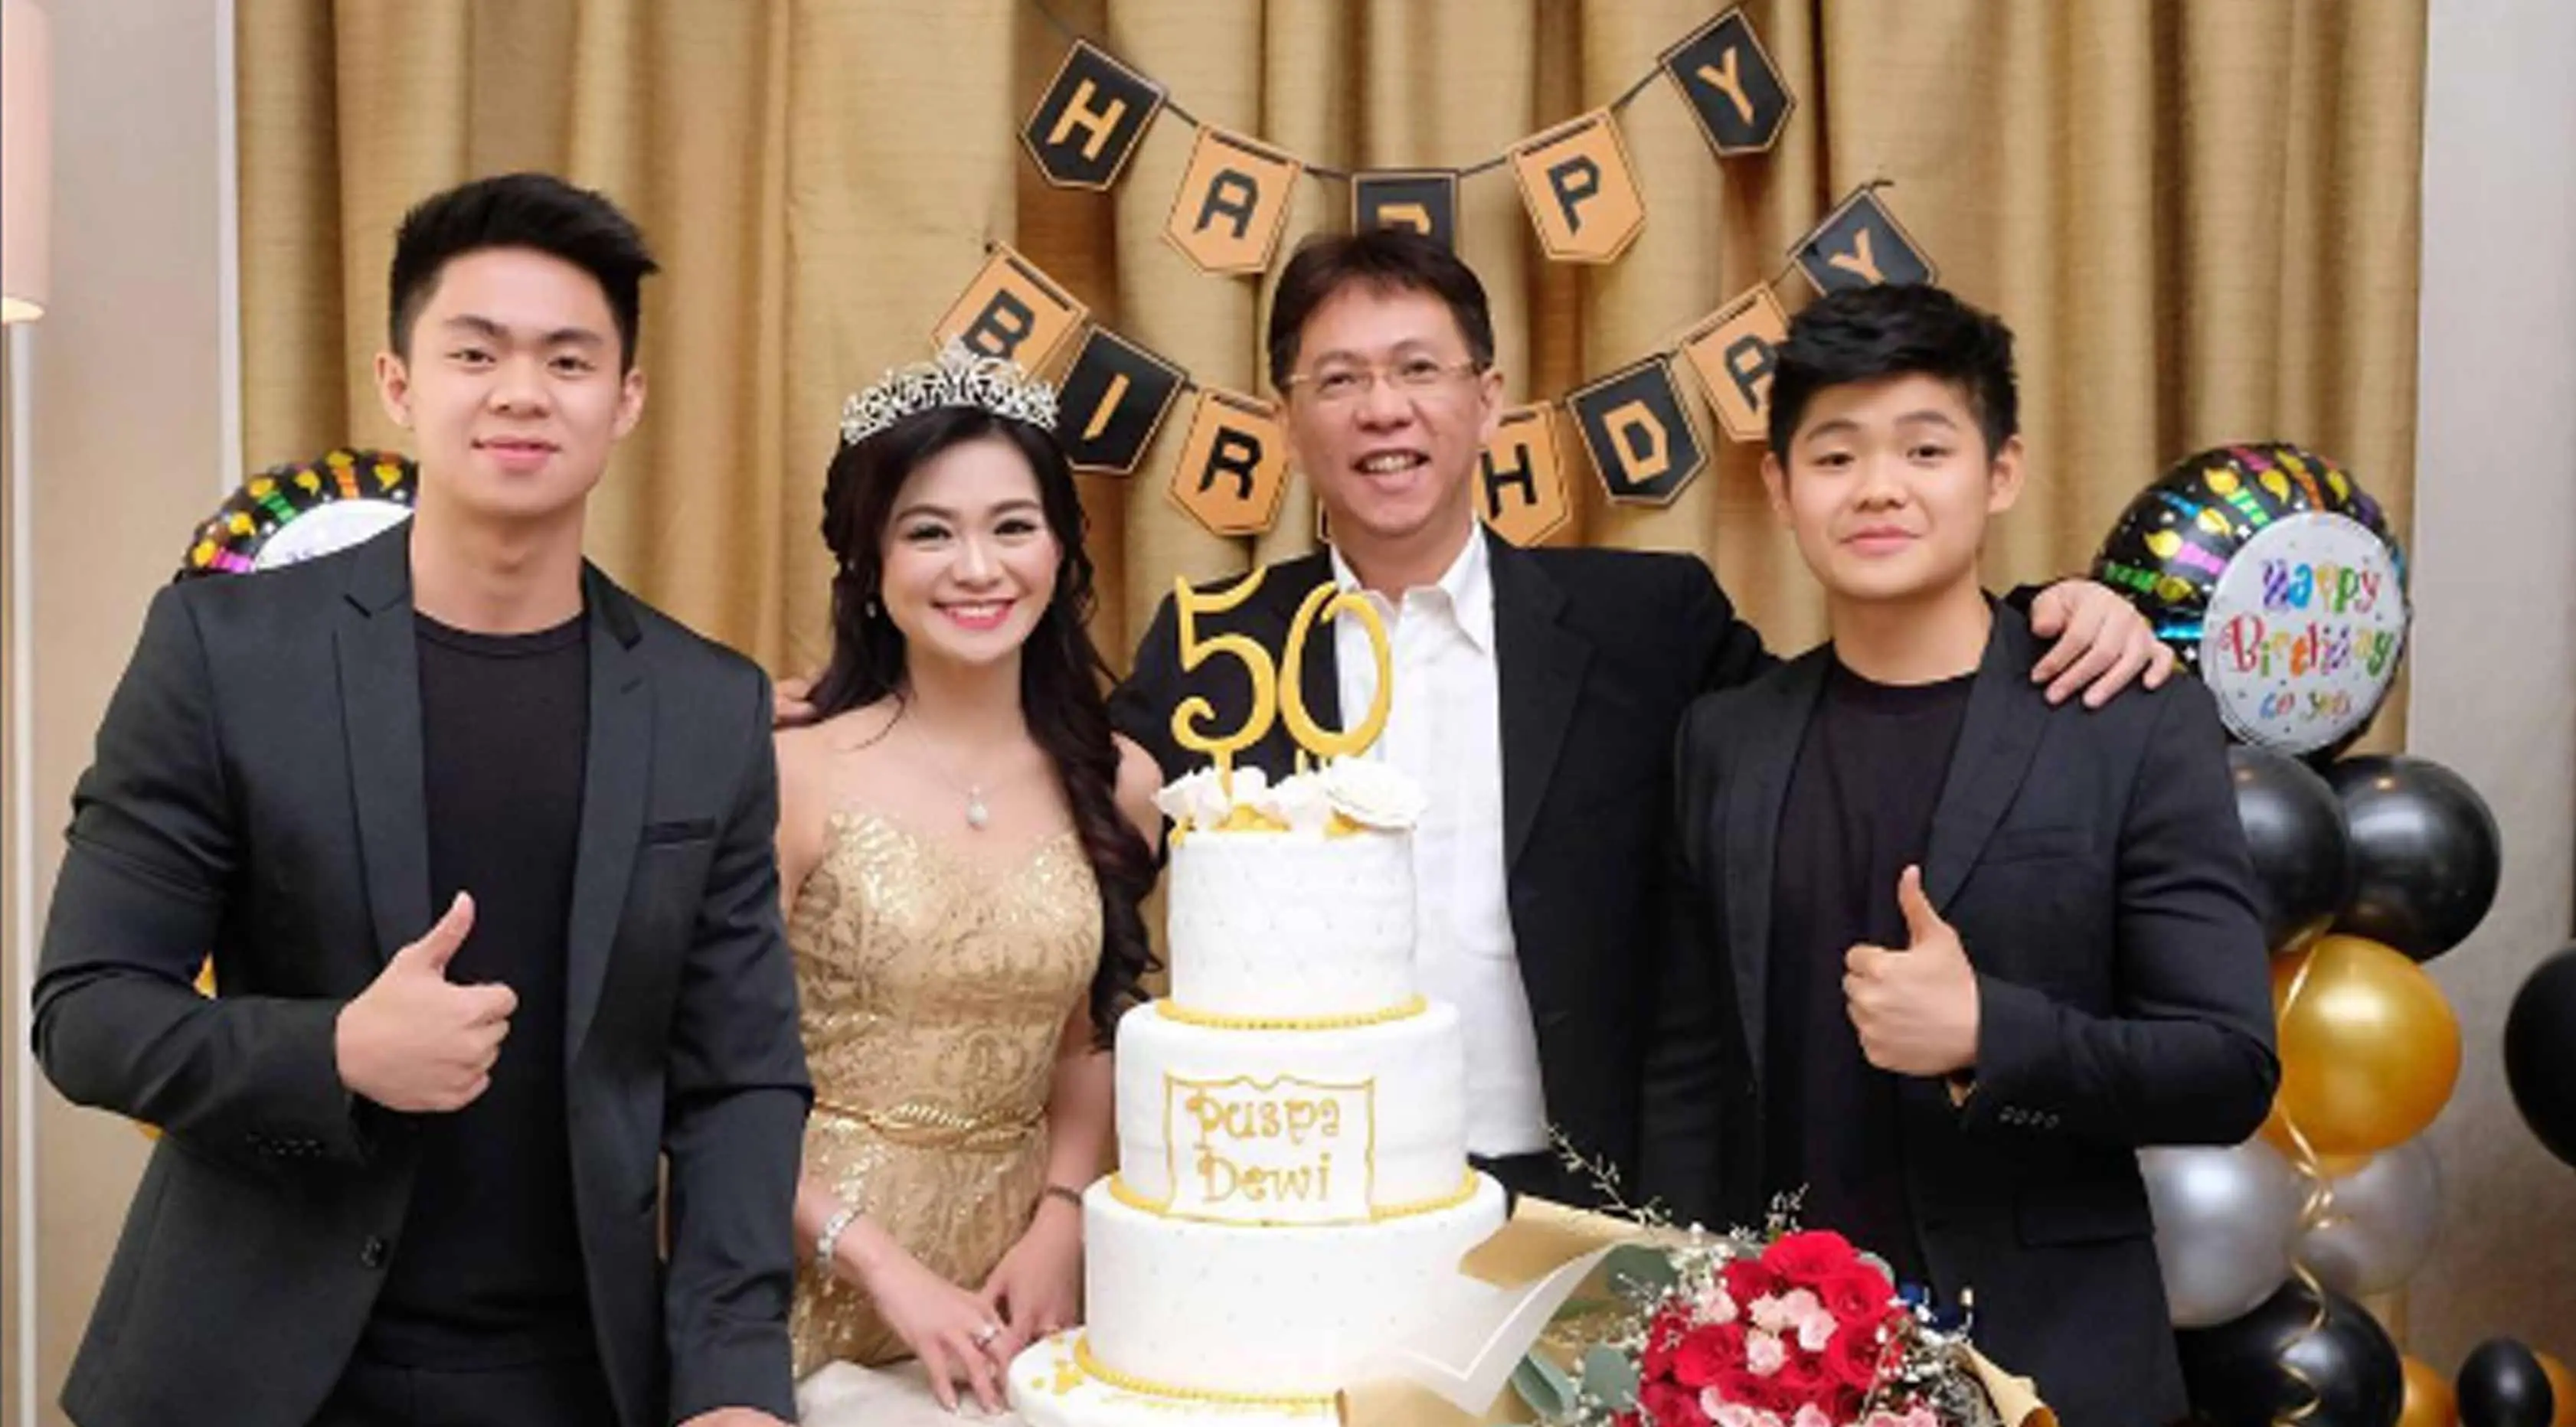 Tante Puspa Dewi berpose dengan suami dan kedua anaknya saat merayakan ulang tahunnya yang ke-50. (Instagram/@puspadewihc)